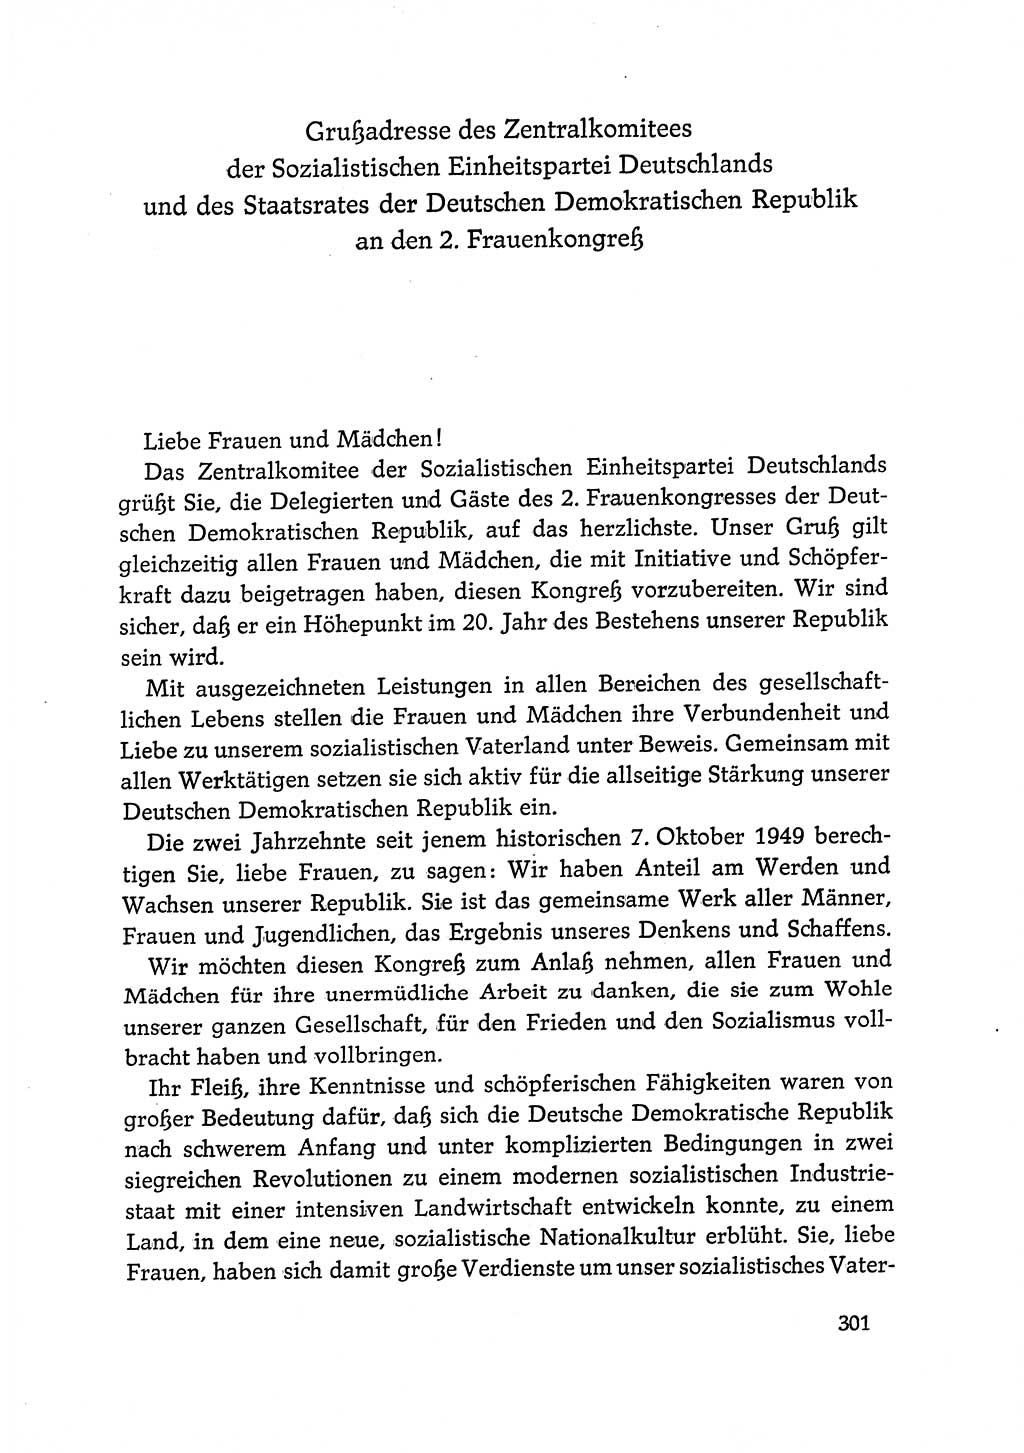 Dokumente der Sozialistischen Einheitspartei Deutschlands (SED) [Deutsche Demokratische Republik (DDR)] 1968-1969, Seite 301 (Dok. SED DDR 1968-1969, S. 301)